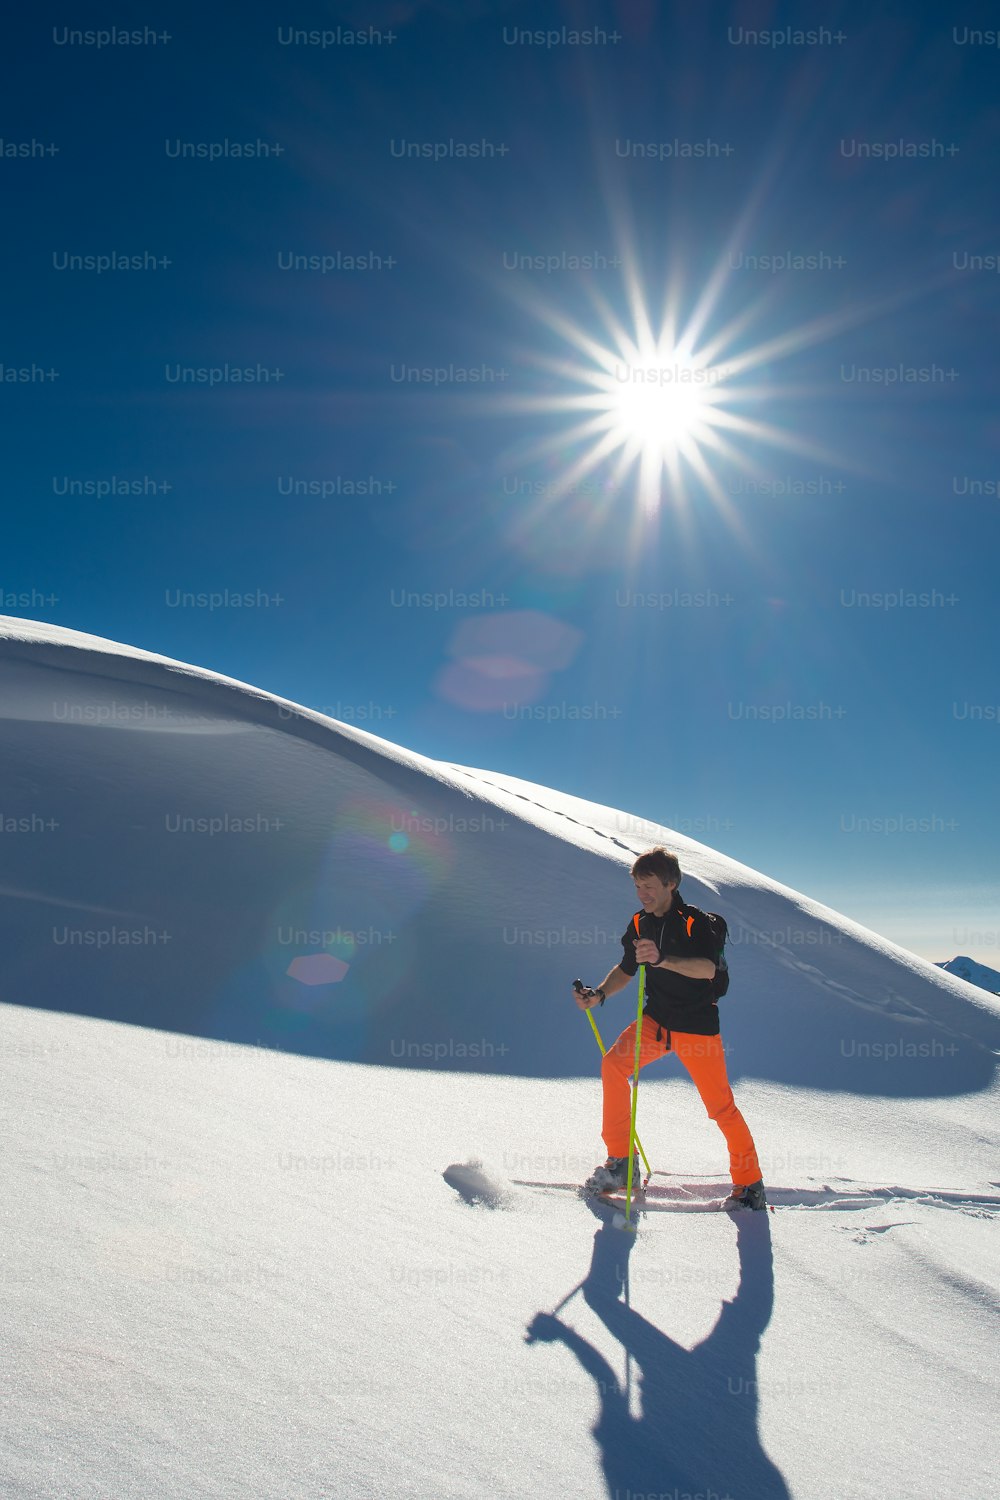 Um esquiador alpino homem sobe em esquis e peles de foca na neve fresca em um forte dia ensolarado